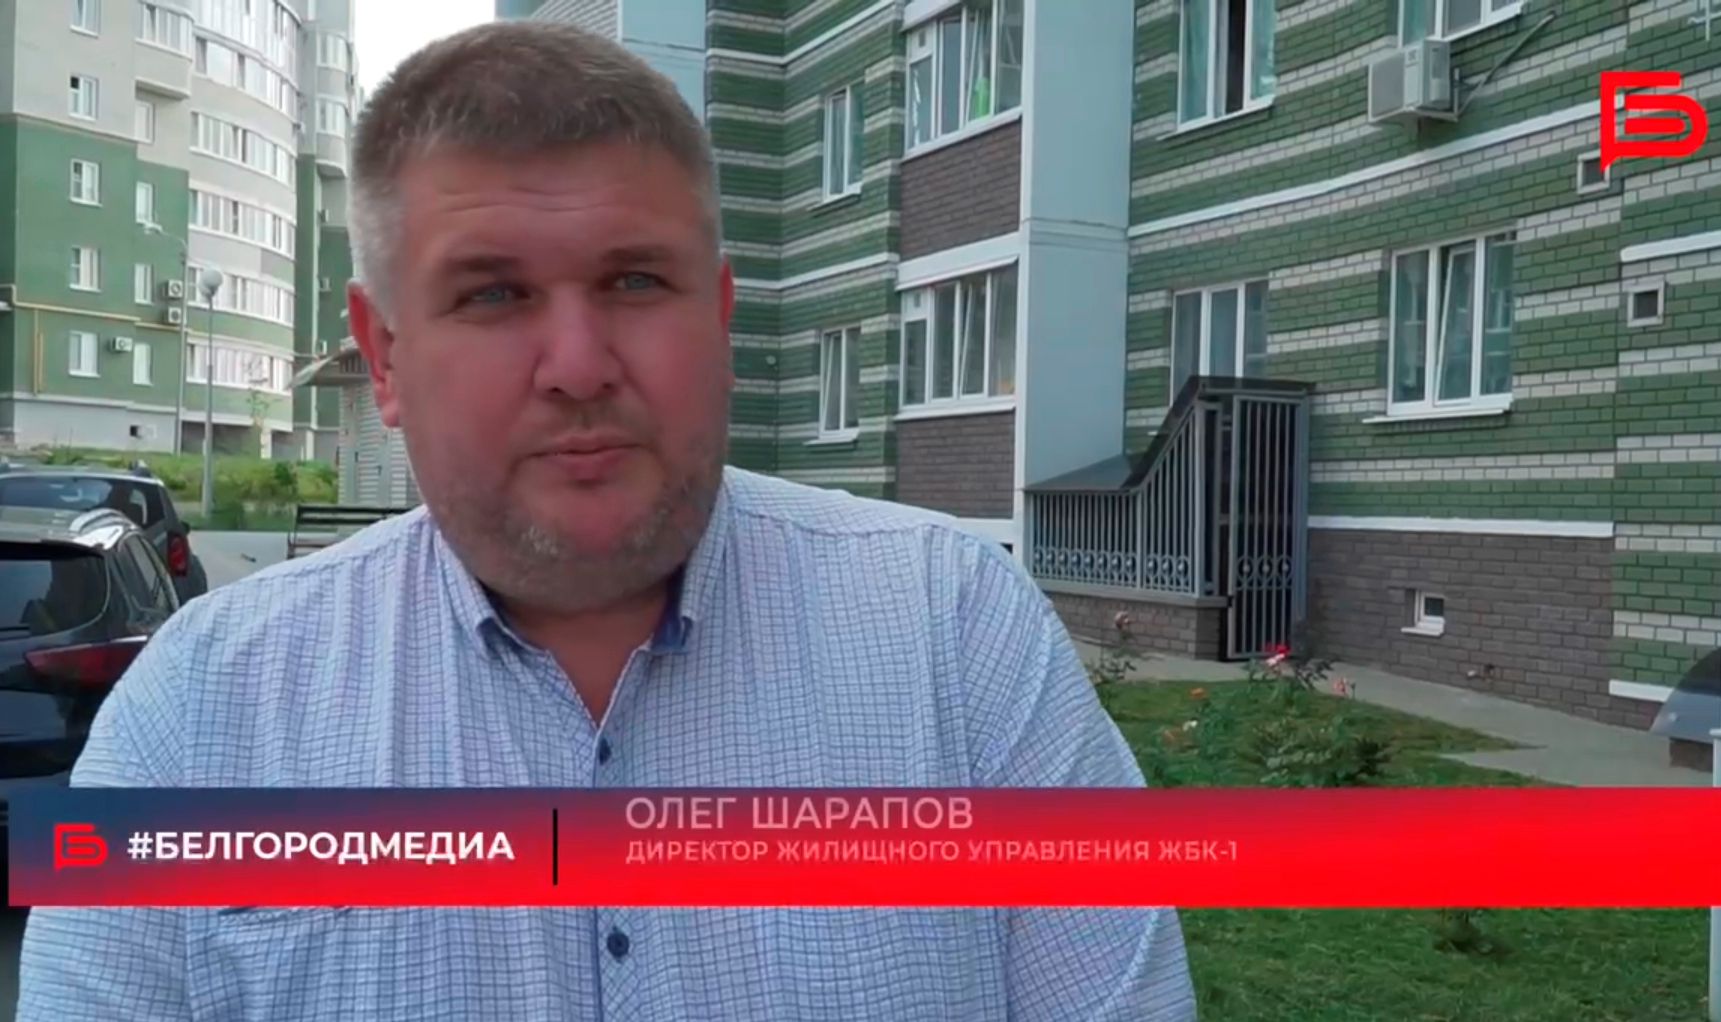 Директор "Жилищного управления ЖБК-1" Олег Шарапов рассказал как работает Управляющая компания и взаимодействует с энергоснабжающими организациями. Подробности в сюжете.